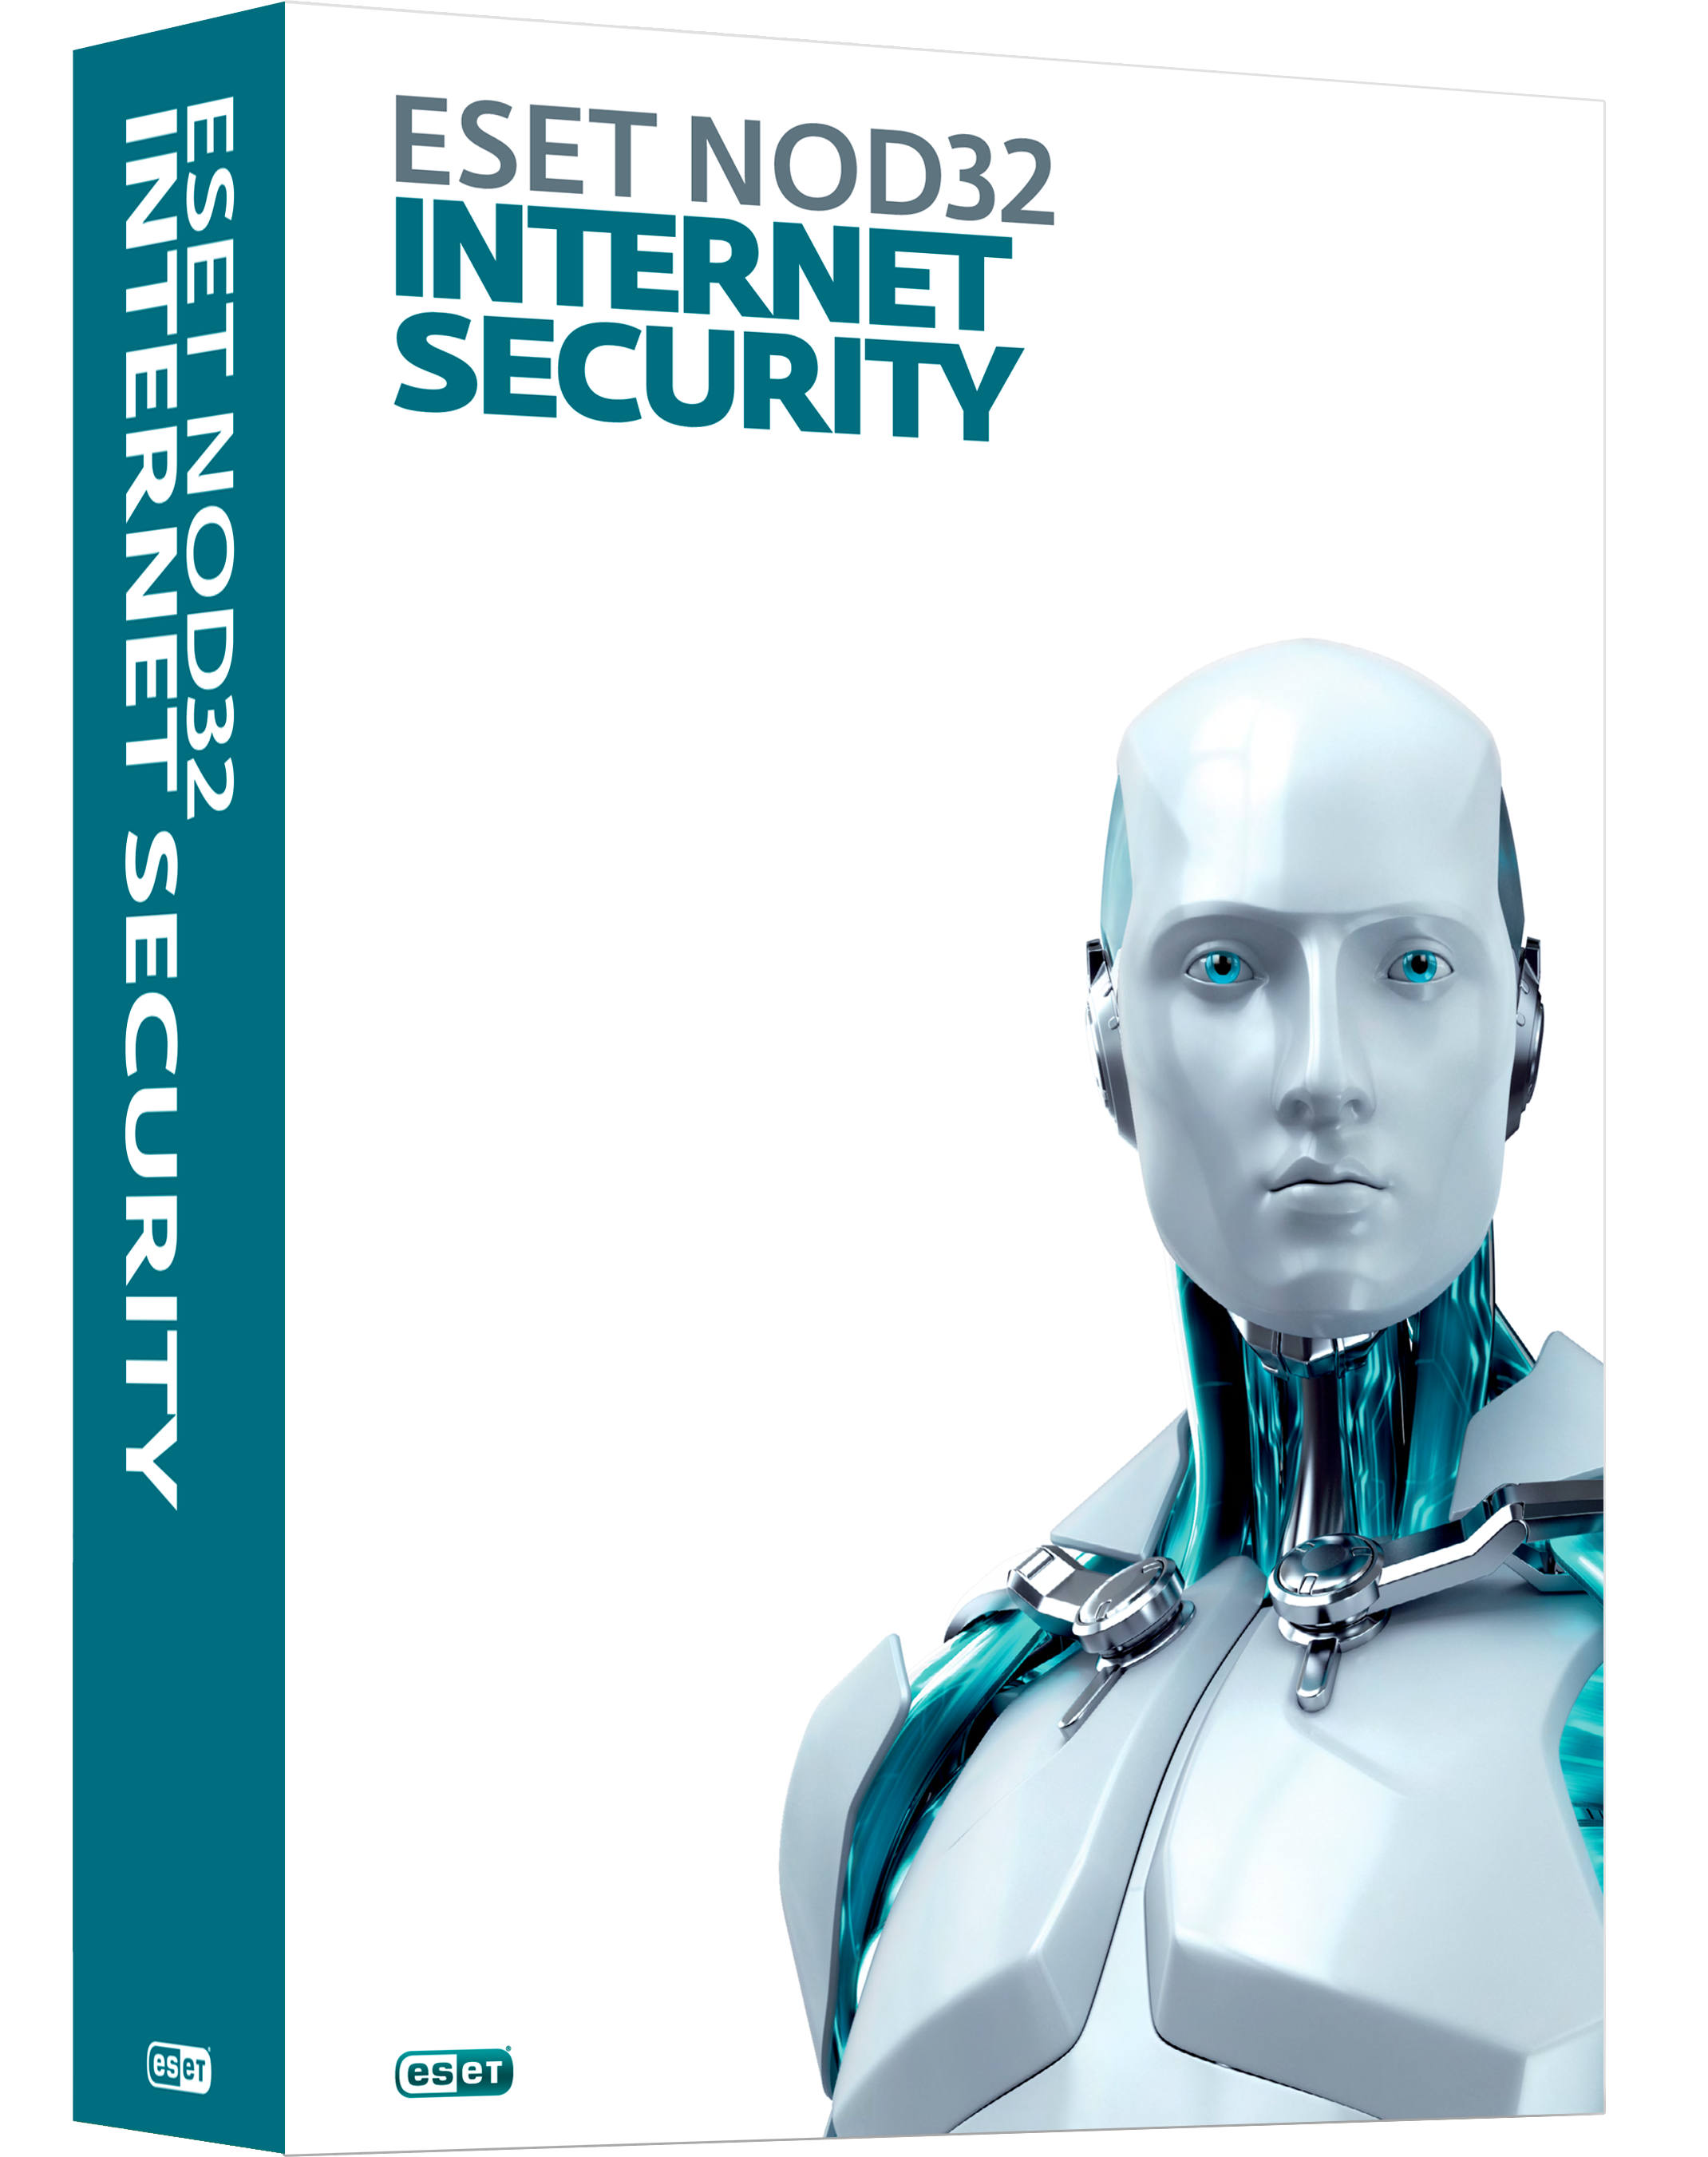 ESET NOD32 INTERNET SECURITY 3 PC 1 year 💳 CARD 0%